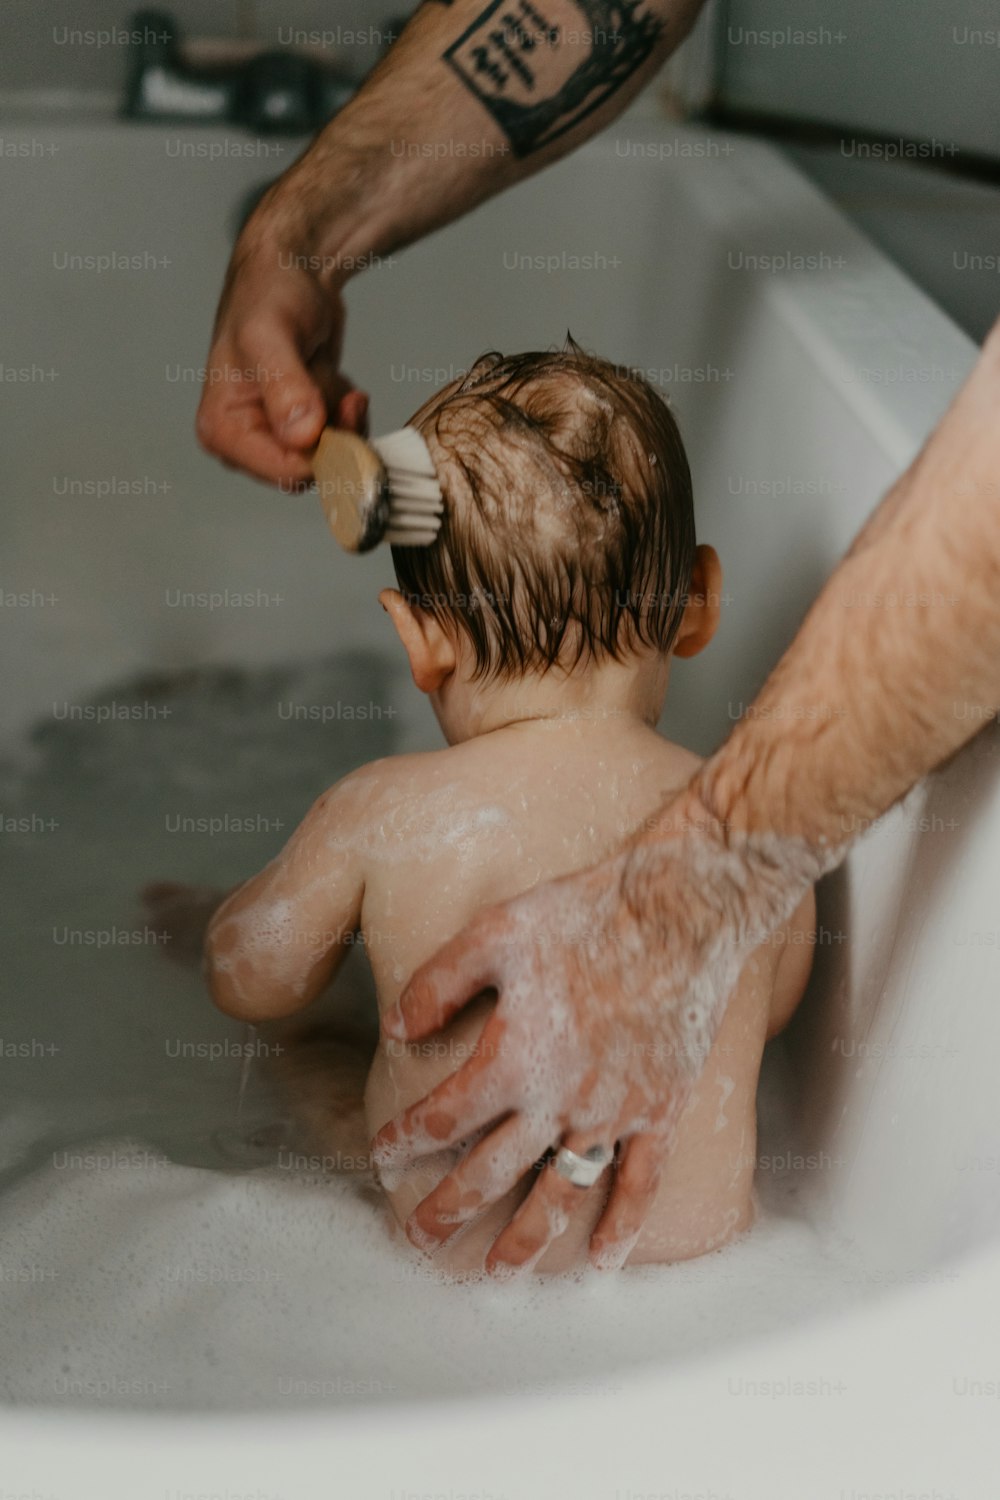 Un uomo che spazzola i capelli di un bambino in una vasca da bagno